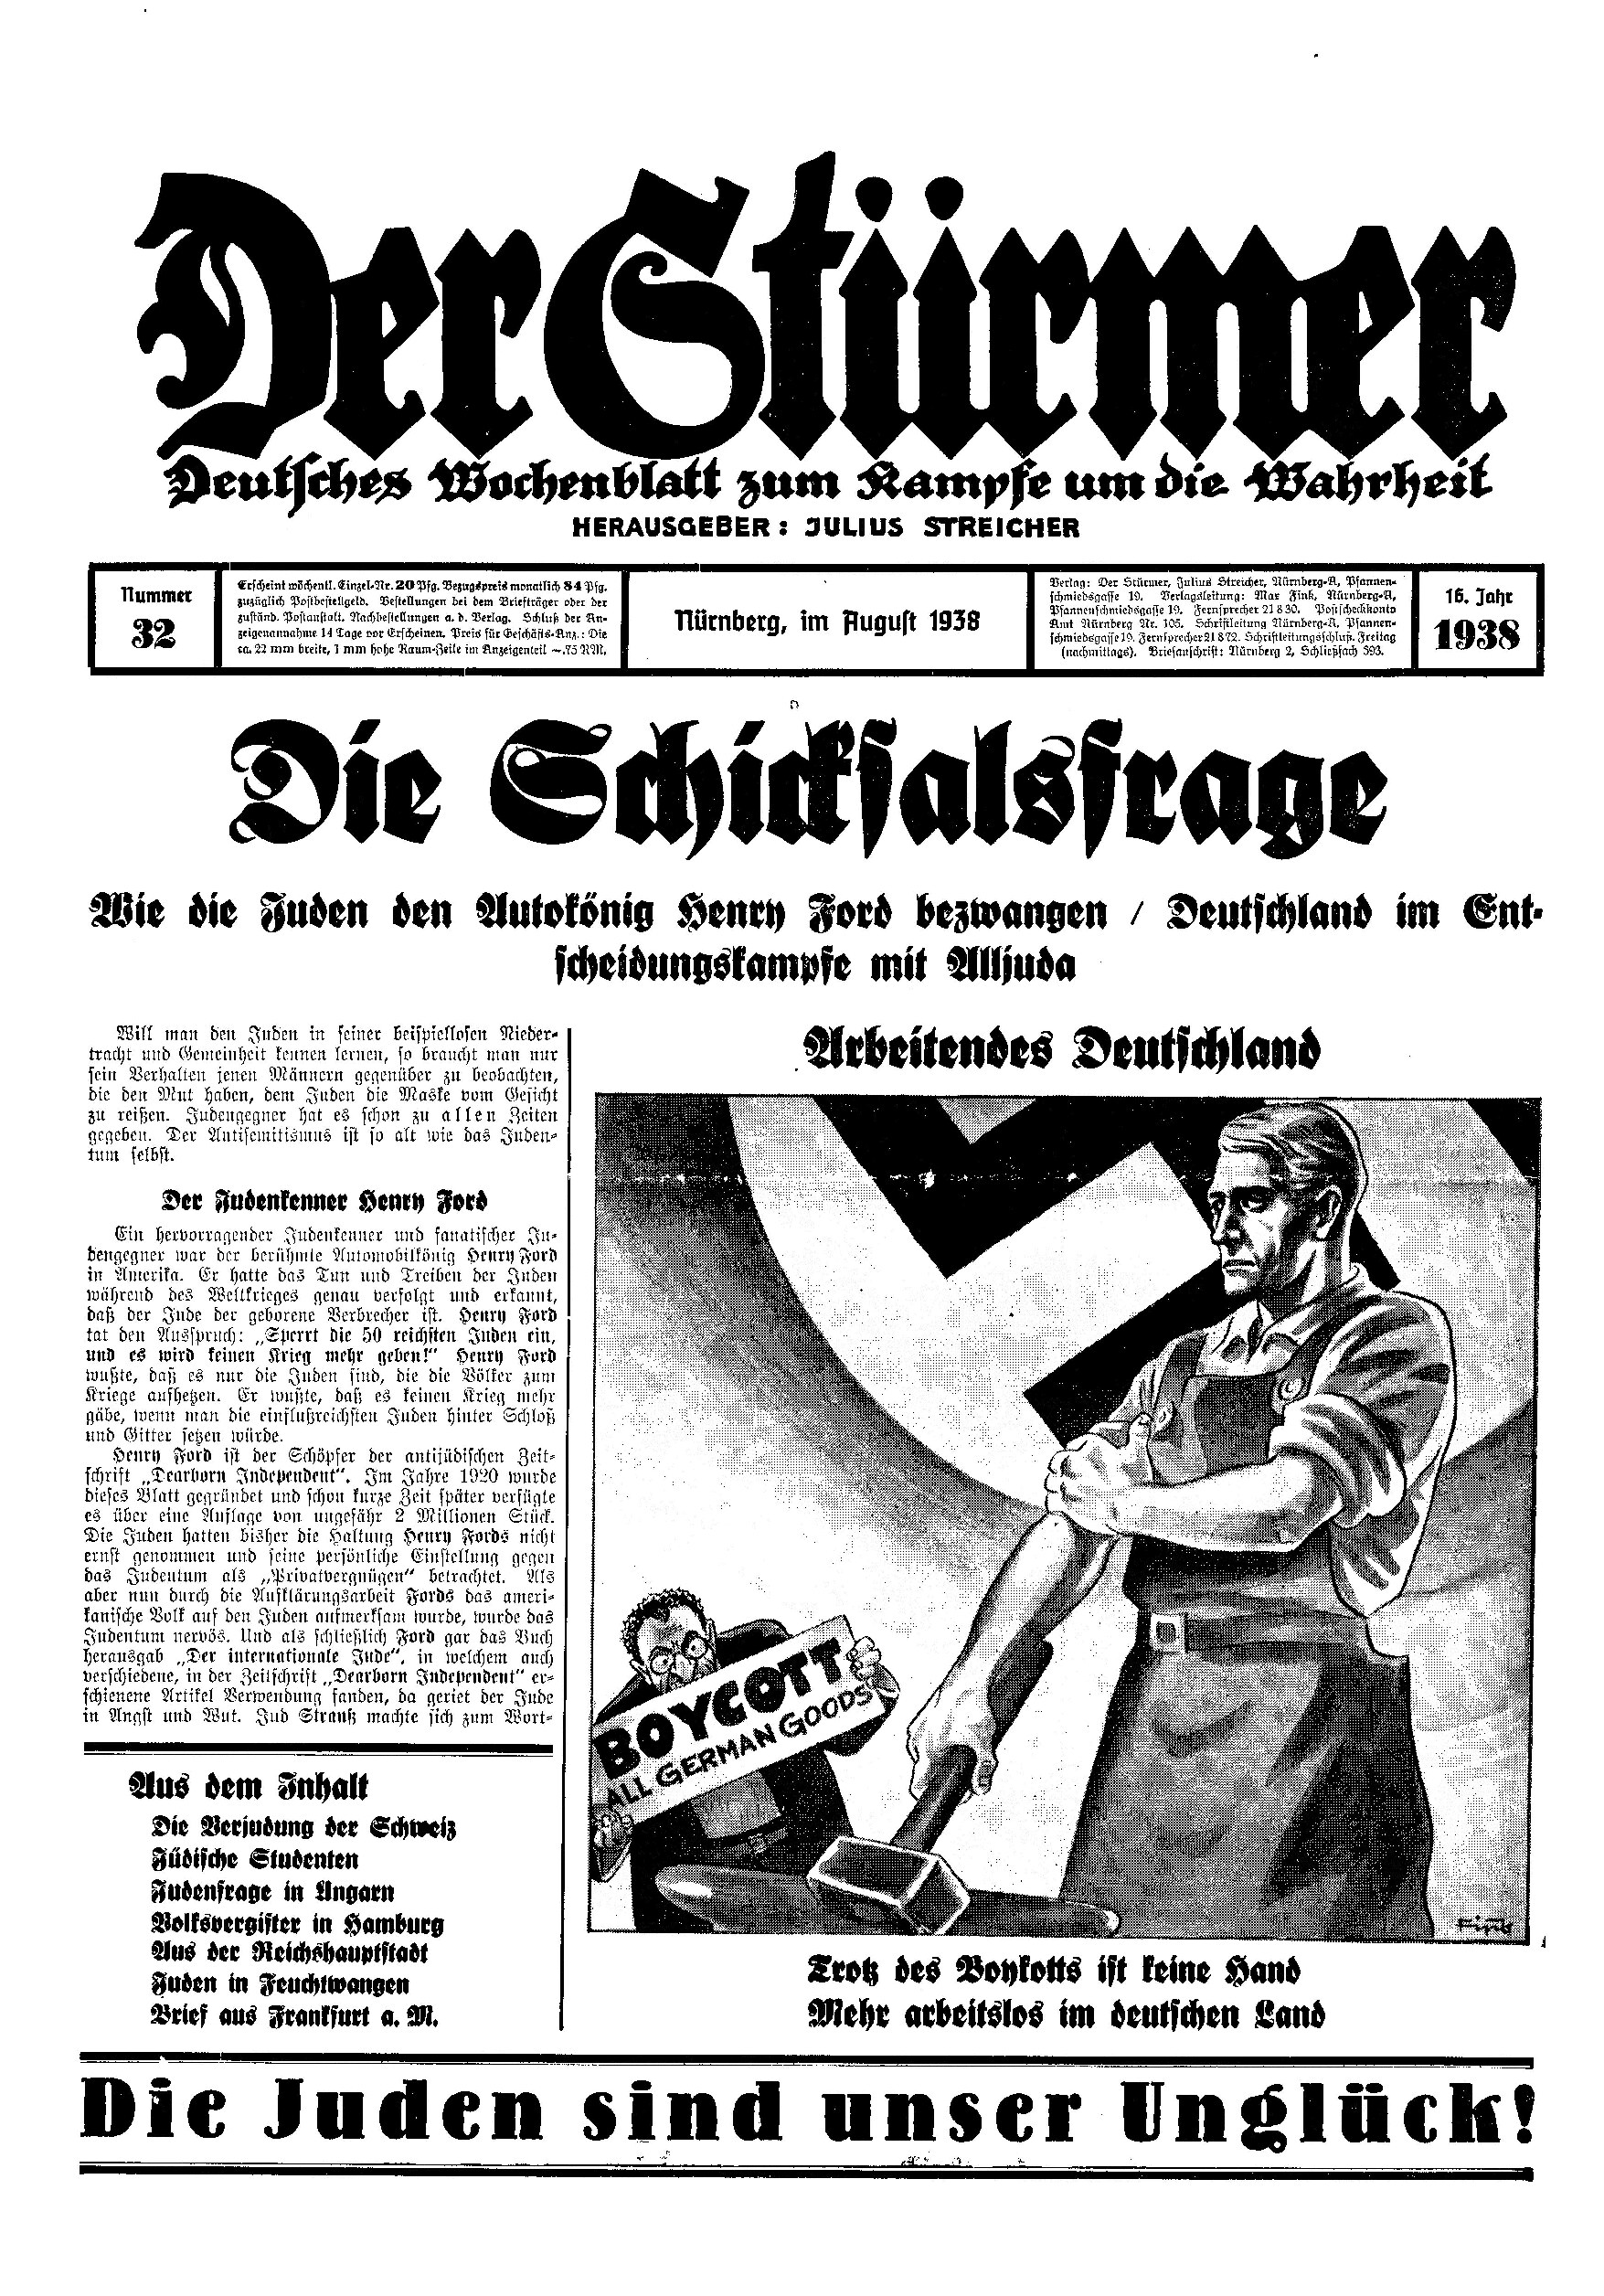 Der Stürmer - 1938 Nr. 32 - Die Schicksalsfrage